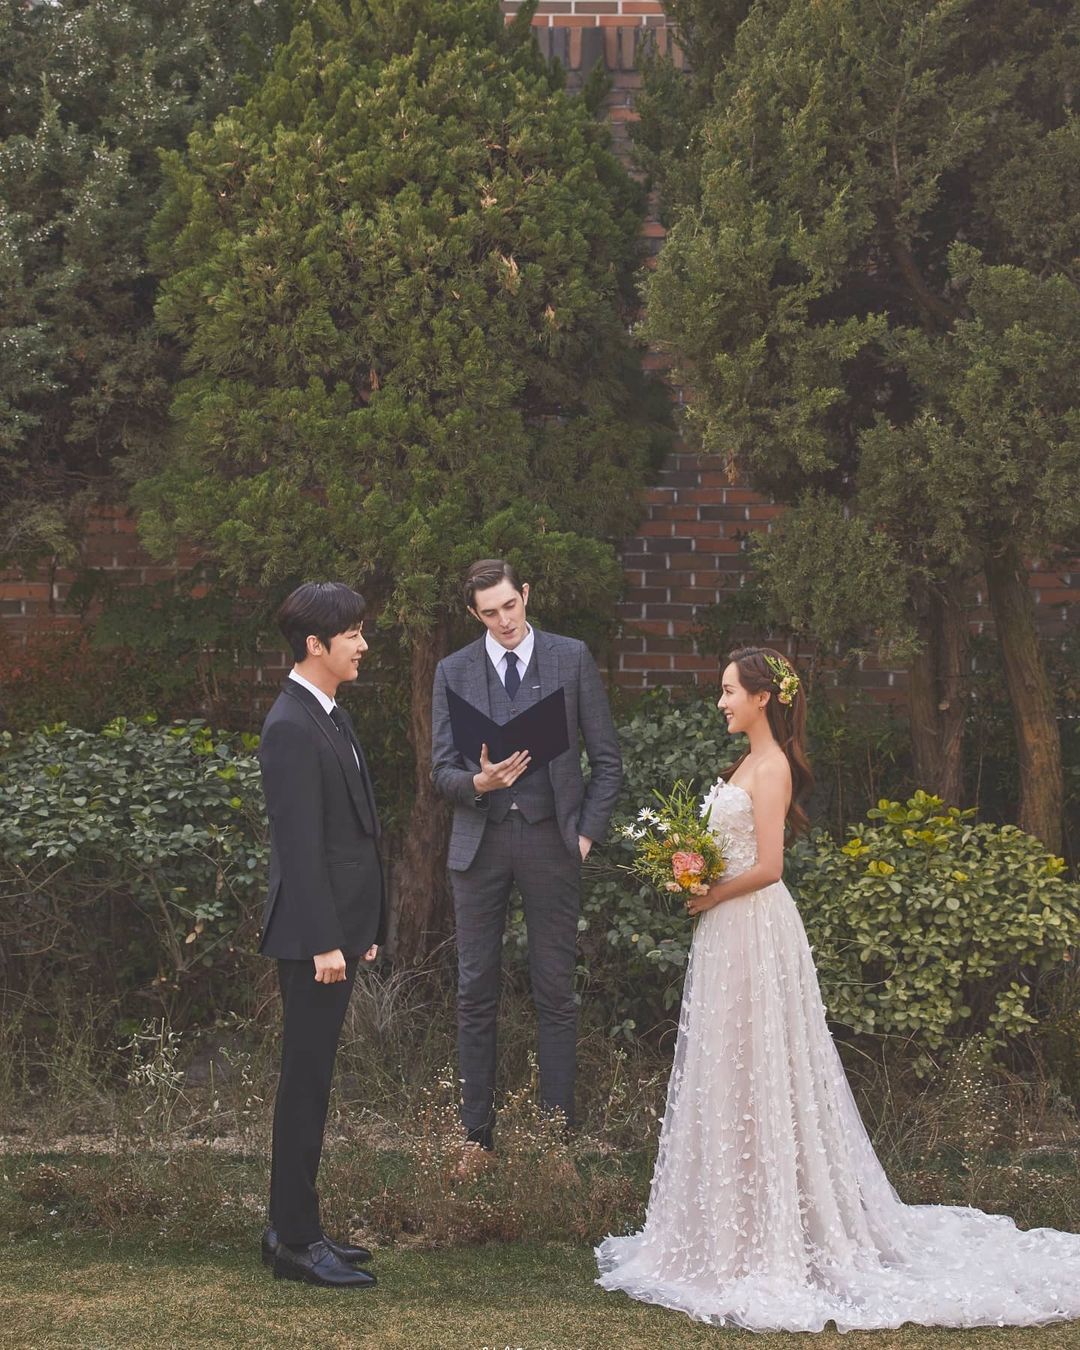 Hãy cùng khám phá bộ ảnh cưới tuyệt đẹp của Oh Yoon Hee để cảm nhận được tình yêu và niềm tin trong một đám cưới tràn đầy hạnh phúc và cảm xúc. Với những khoảnh khắc lãng mạn và chân thực, đây chắc chắn là một trong những bộ ảnh cưới đẹp nhất mà bạn từng thấy.